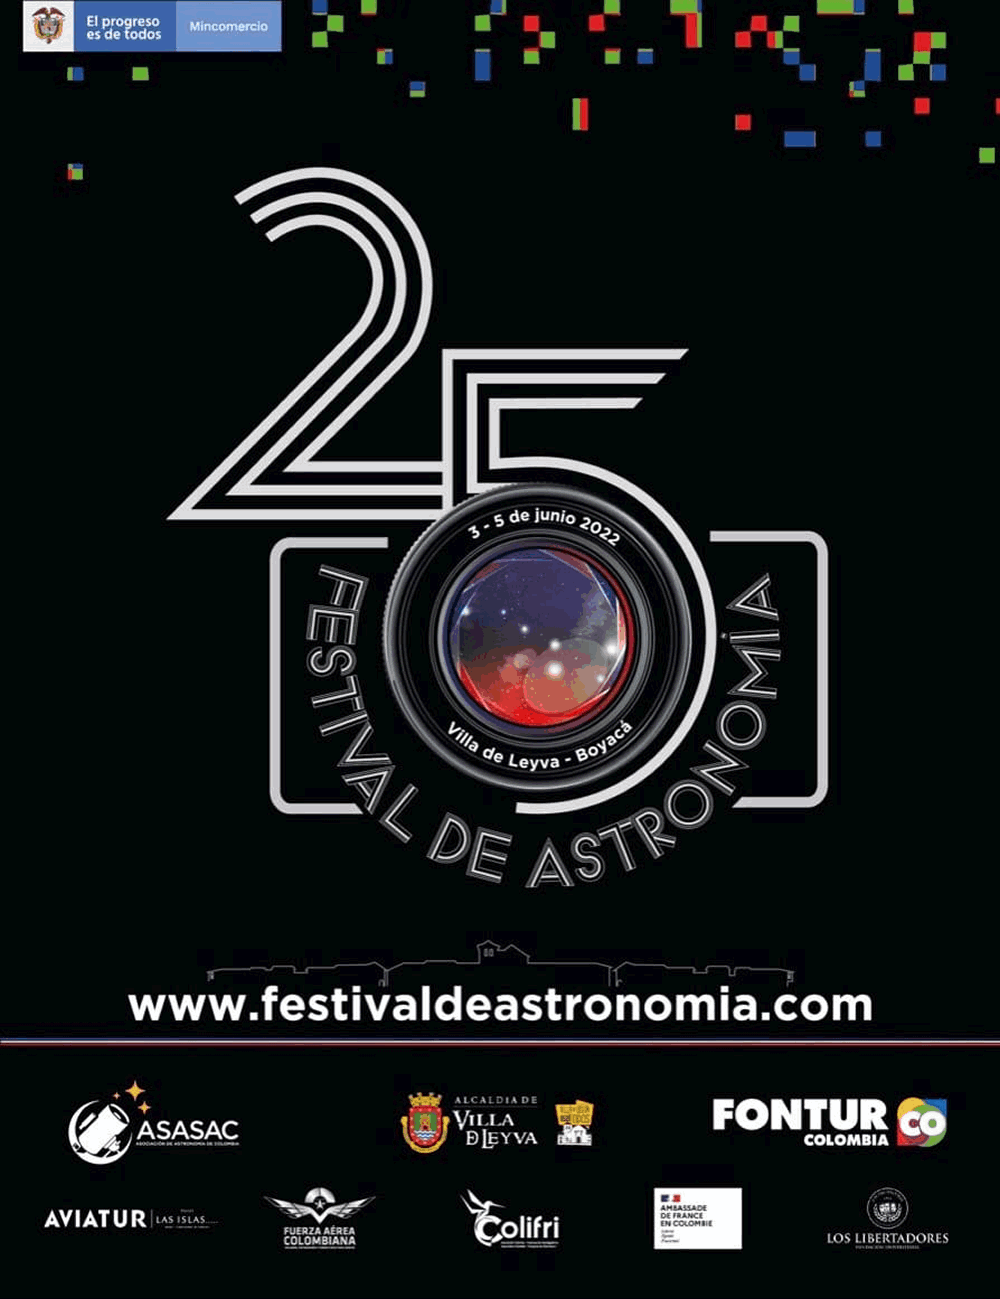 25o Festival de Astronomía en Villa de Leyva del 3 al 5 de junio